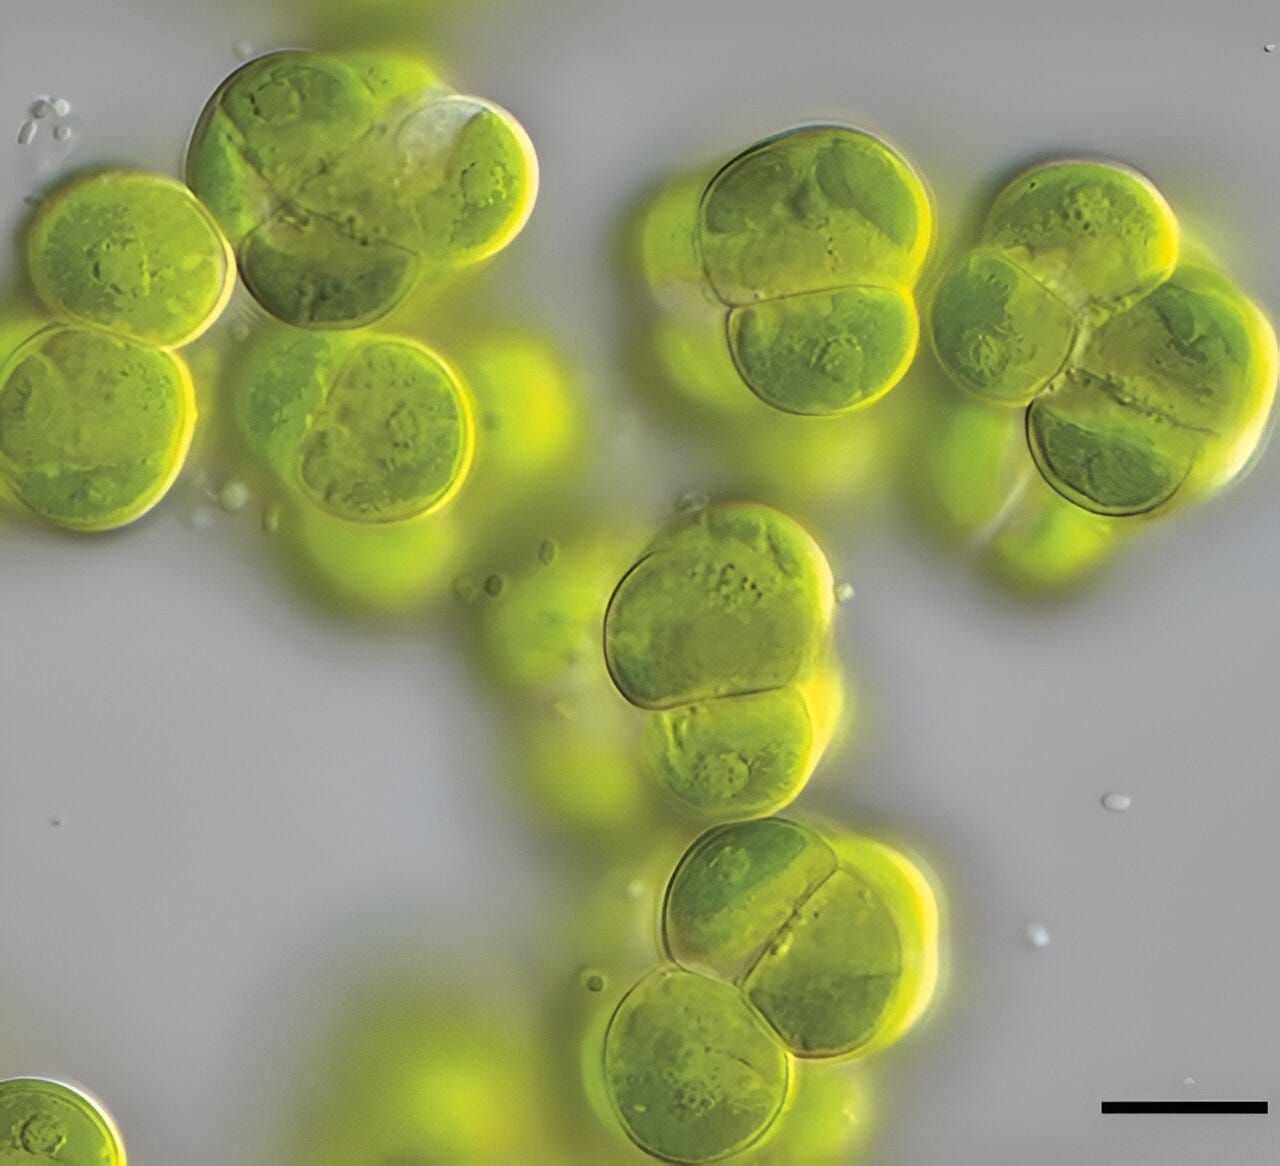 Complex green organisms emerged a billion years ago